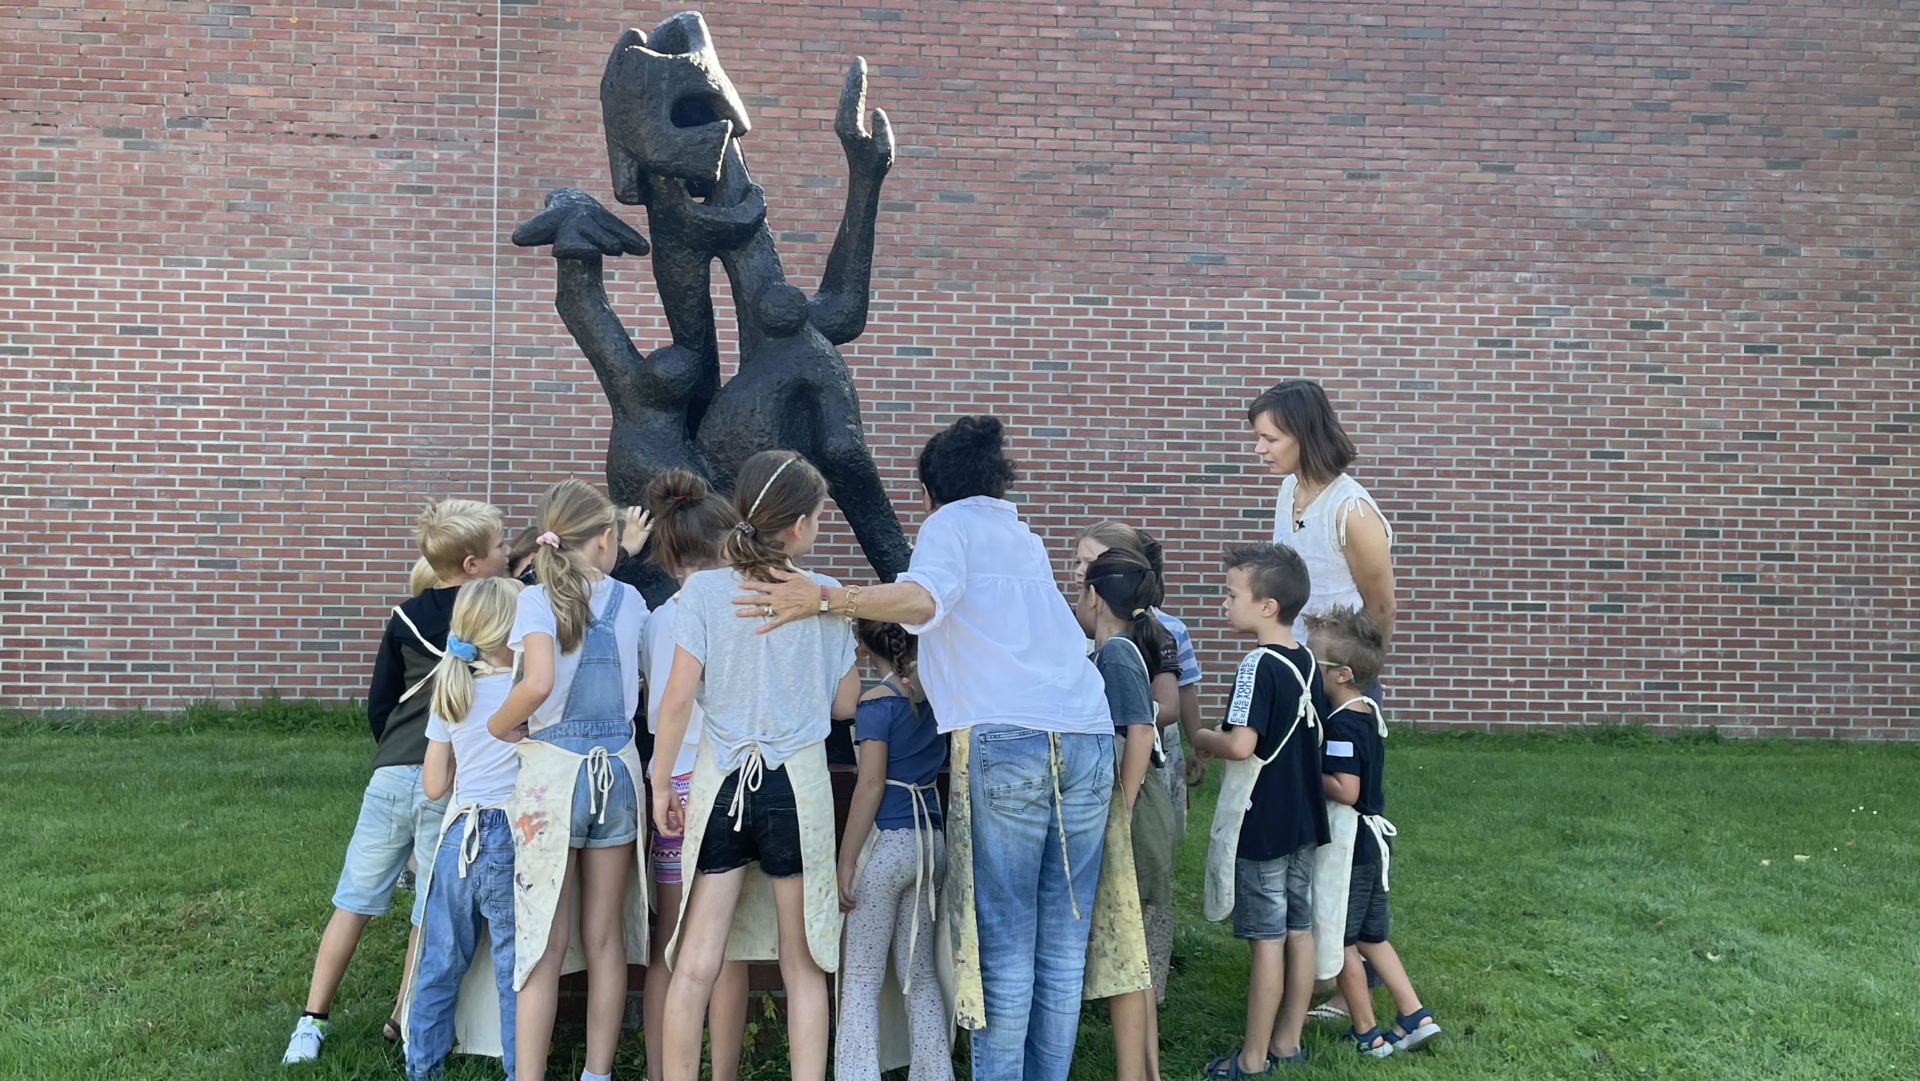 De deelnemende kinderen lieten zich inspireren door kunstwerken van Cobra-kunstenaars. Hier staan ze bij het beeld 'De Gek' van Lotti van der Gaag dat buiten naast het Cobra Museum staat.